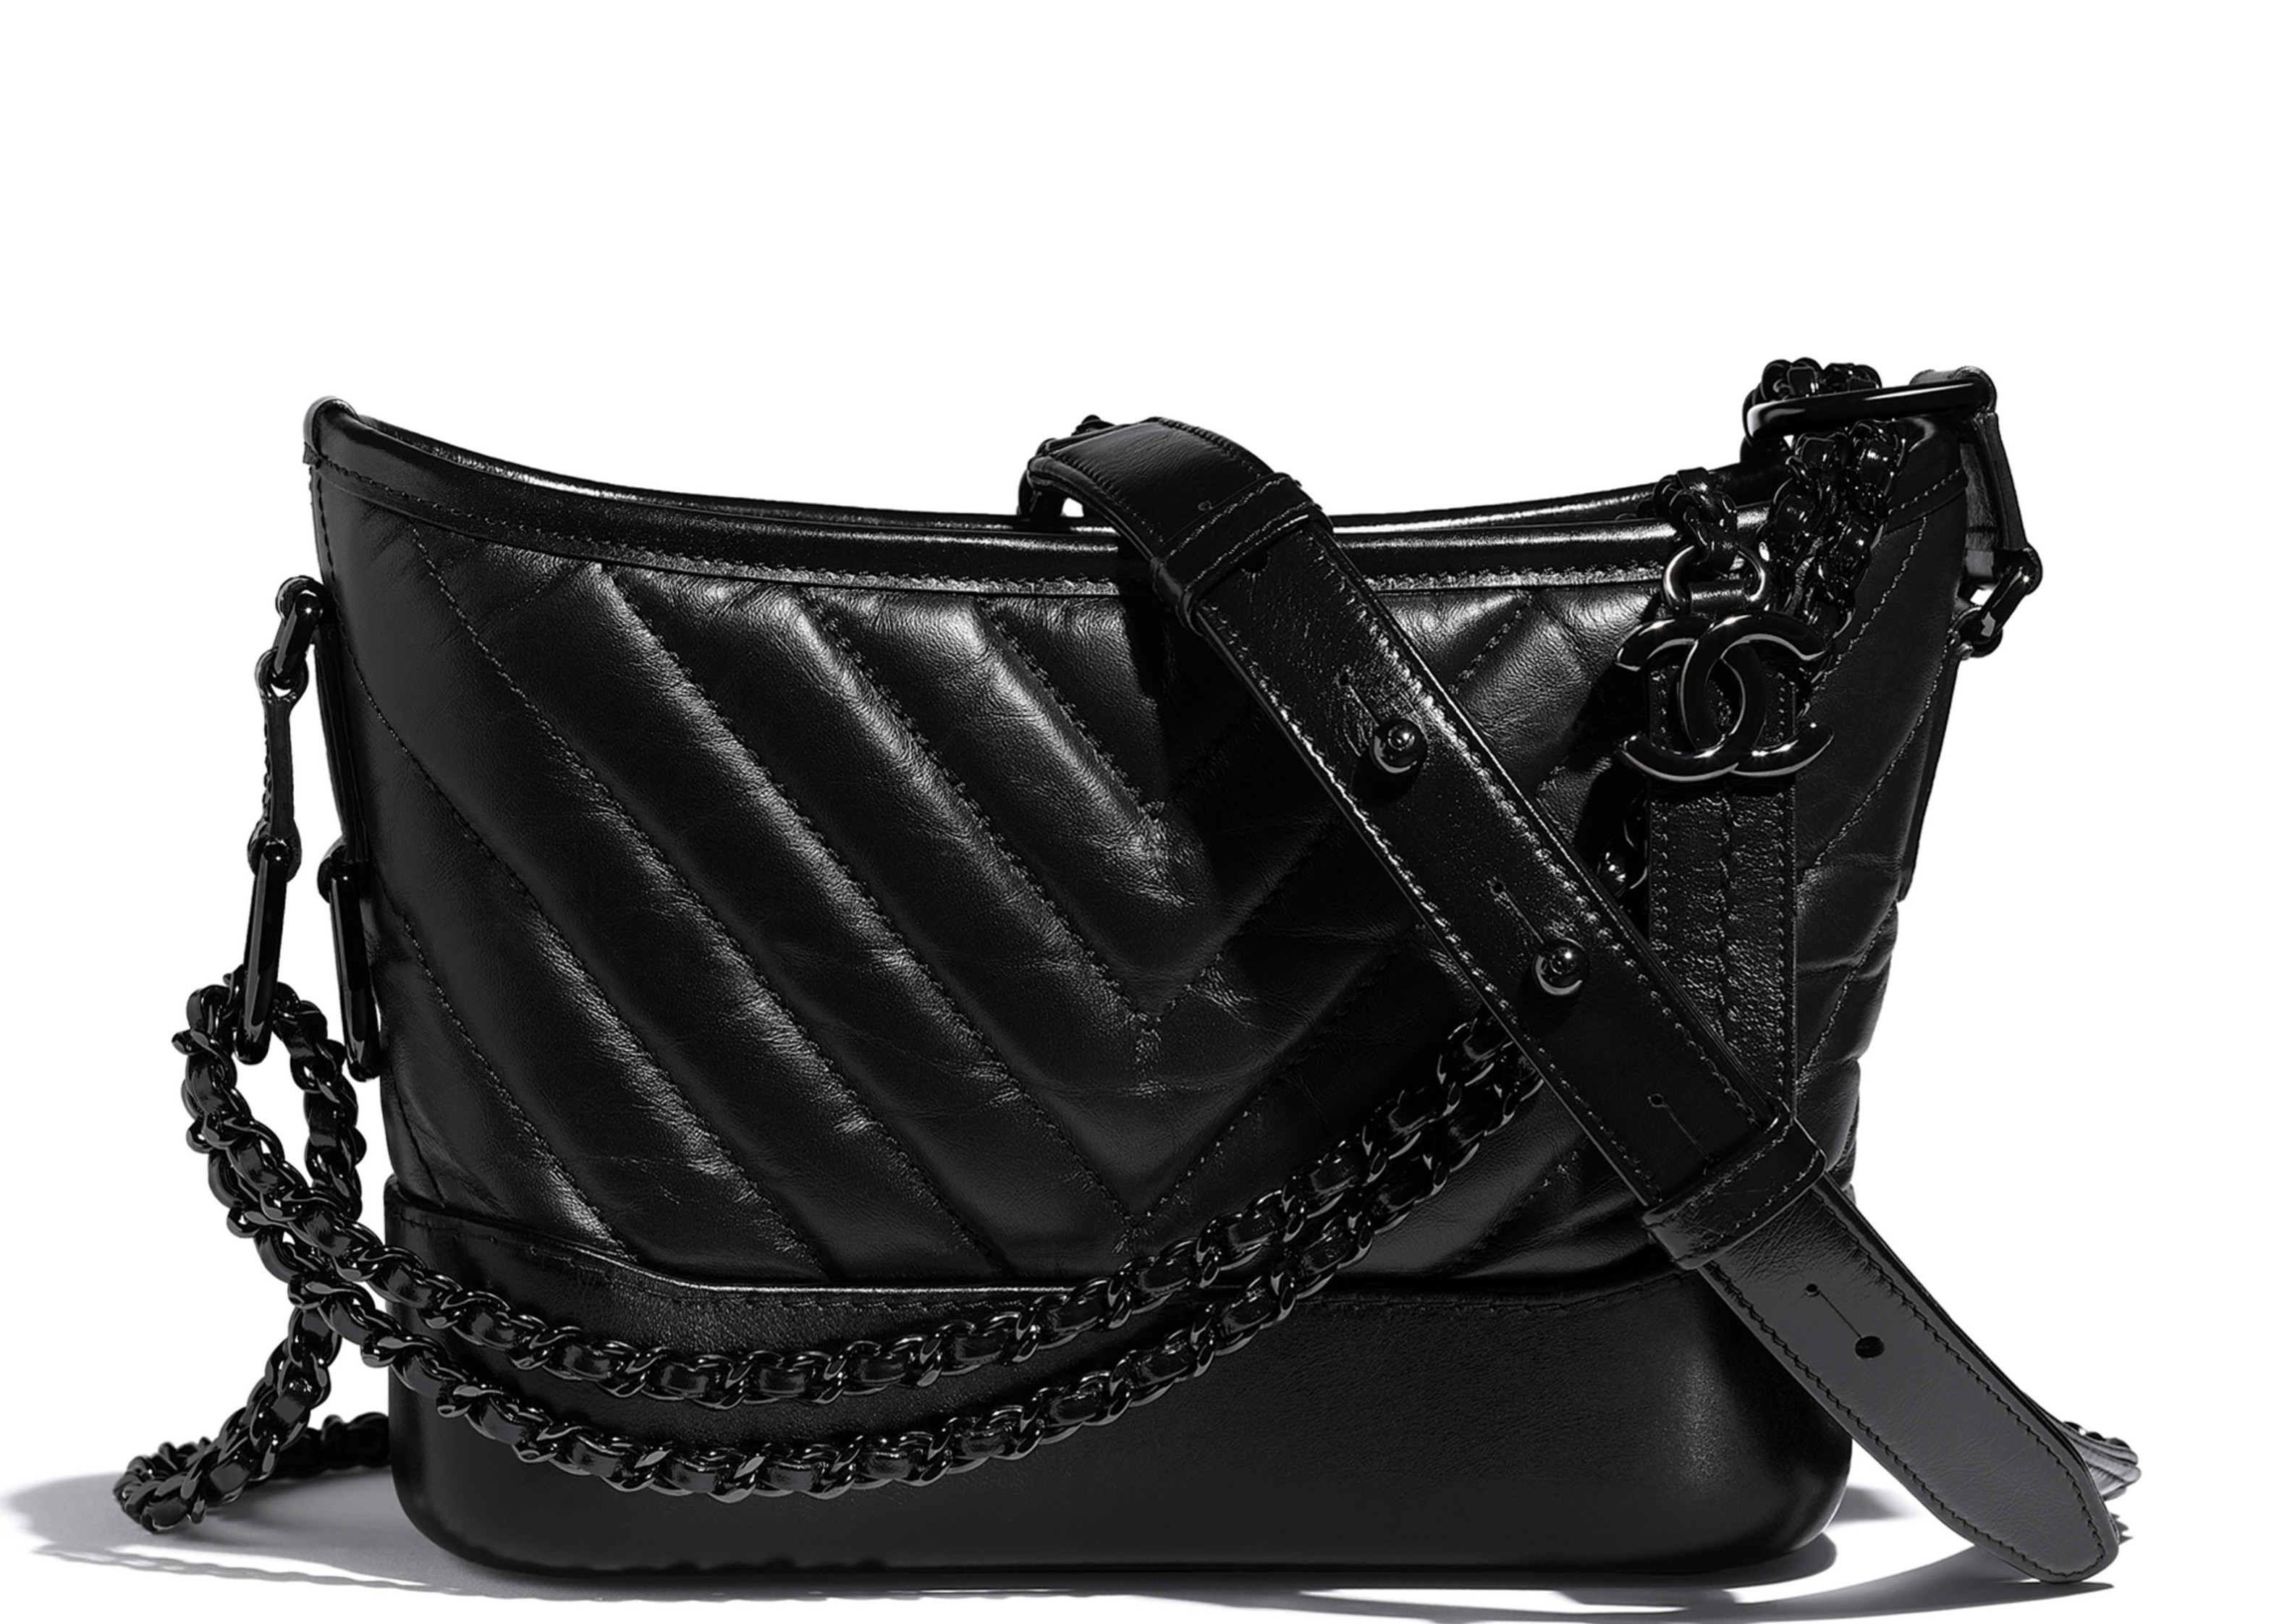 Túi xách da nữ chính hãng Chanel Gabrielle Small Hobo Bag giá rẻ